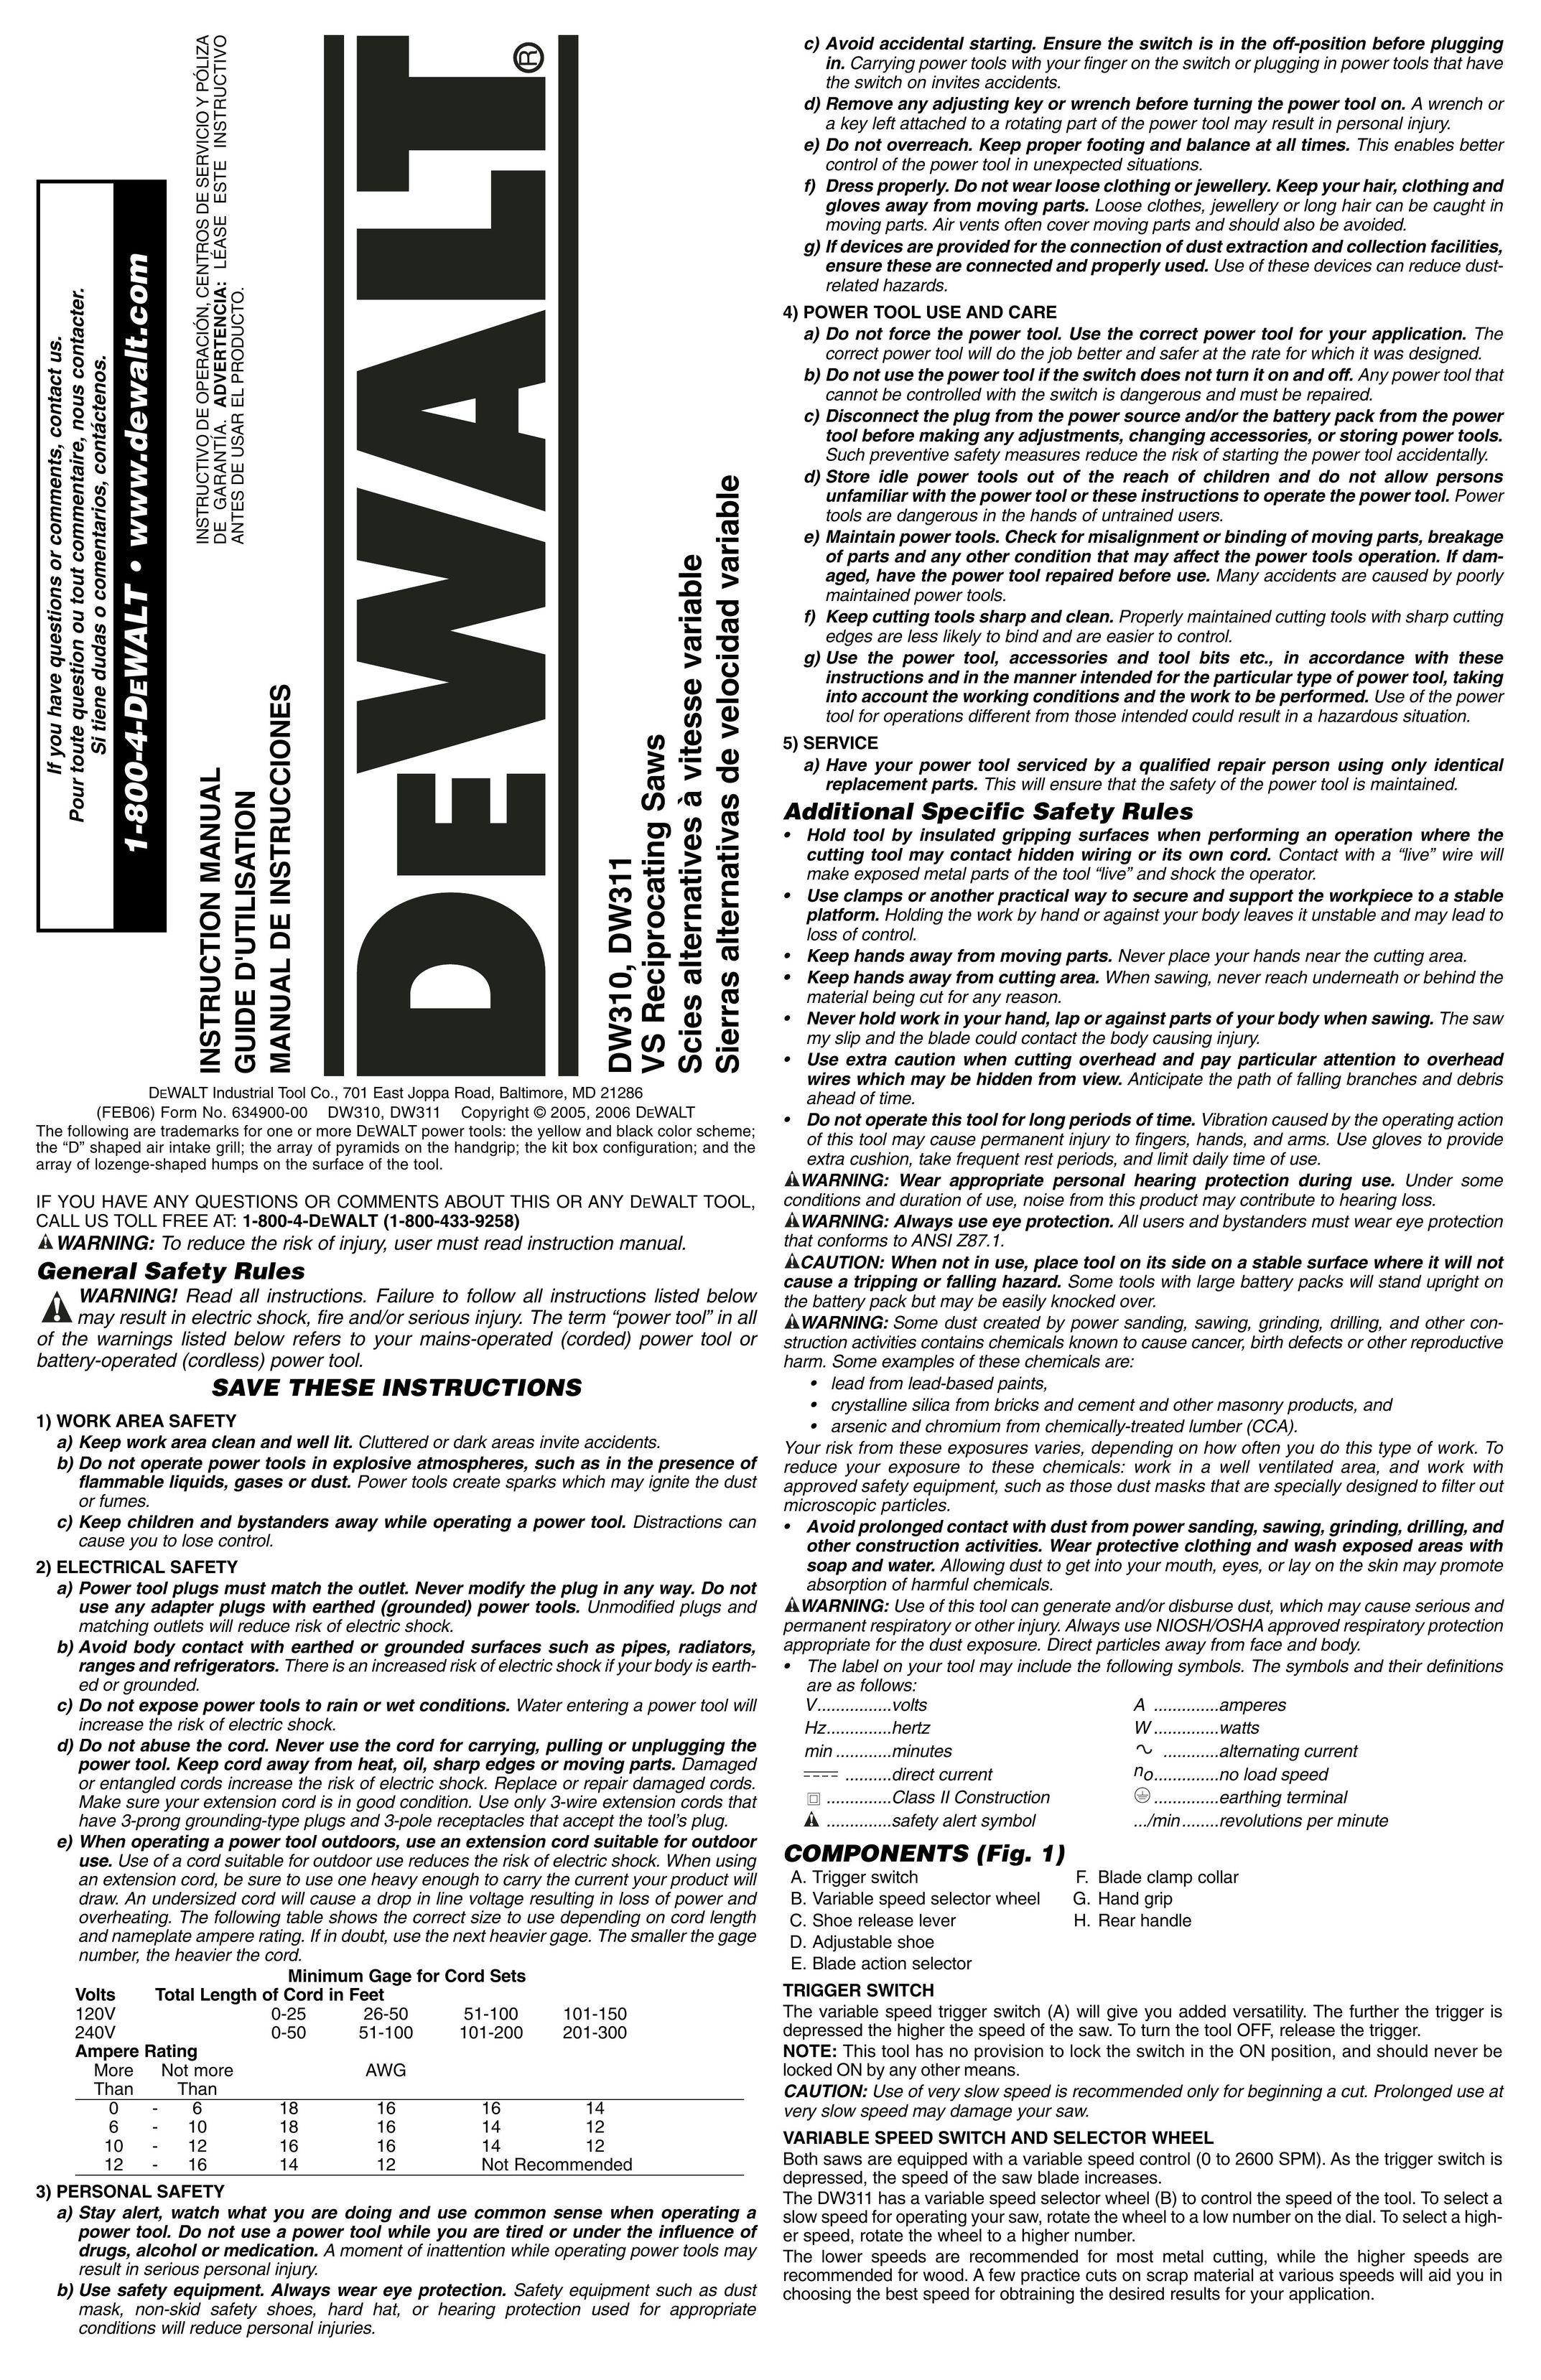 DeWalt DW311 Saw User Manual